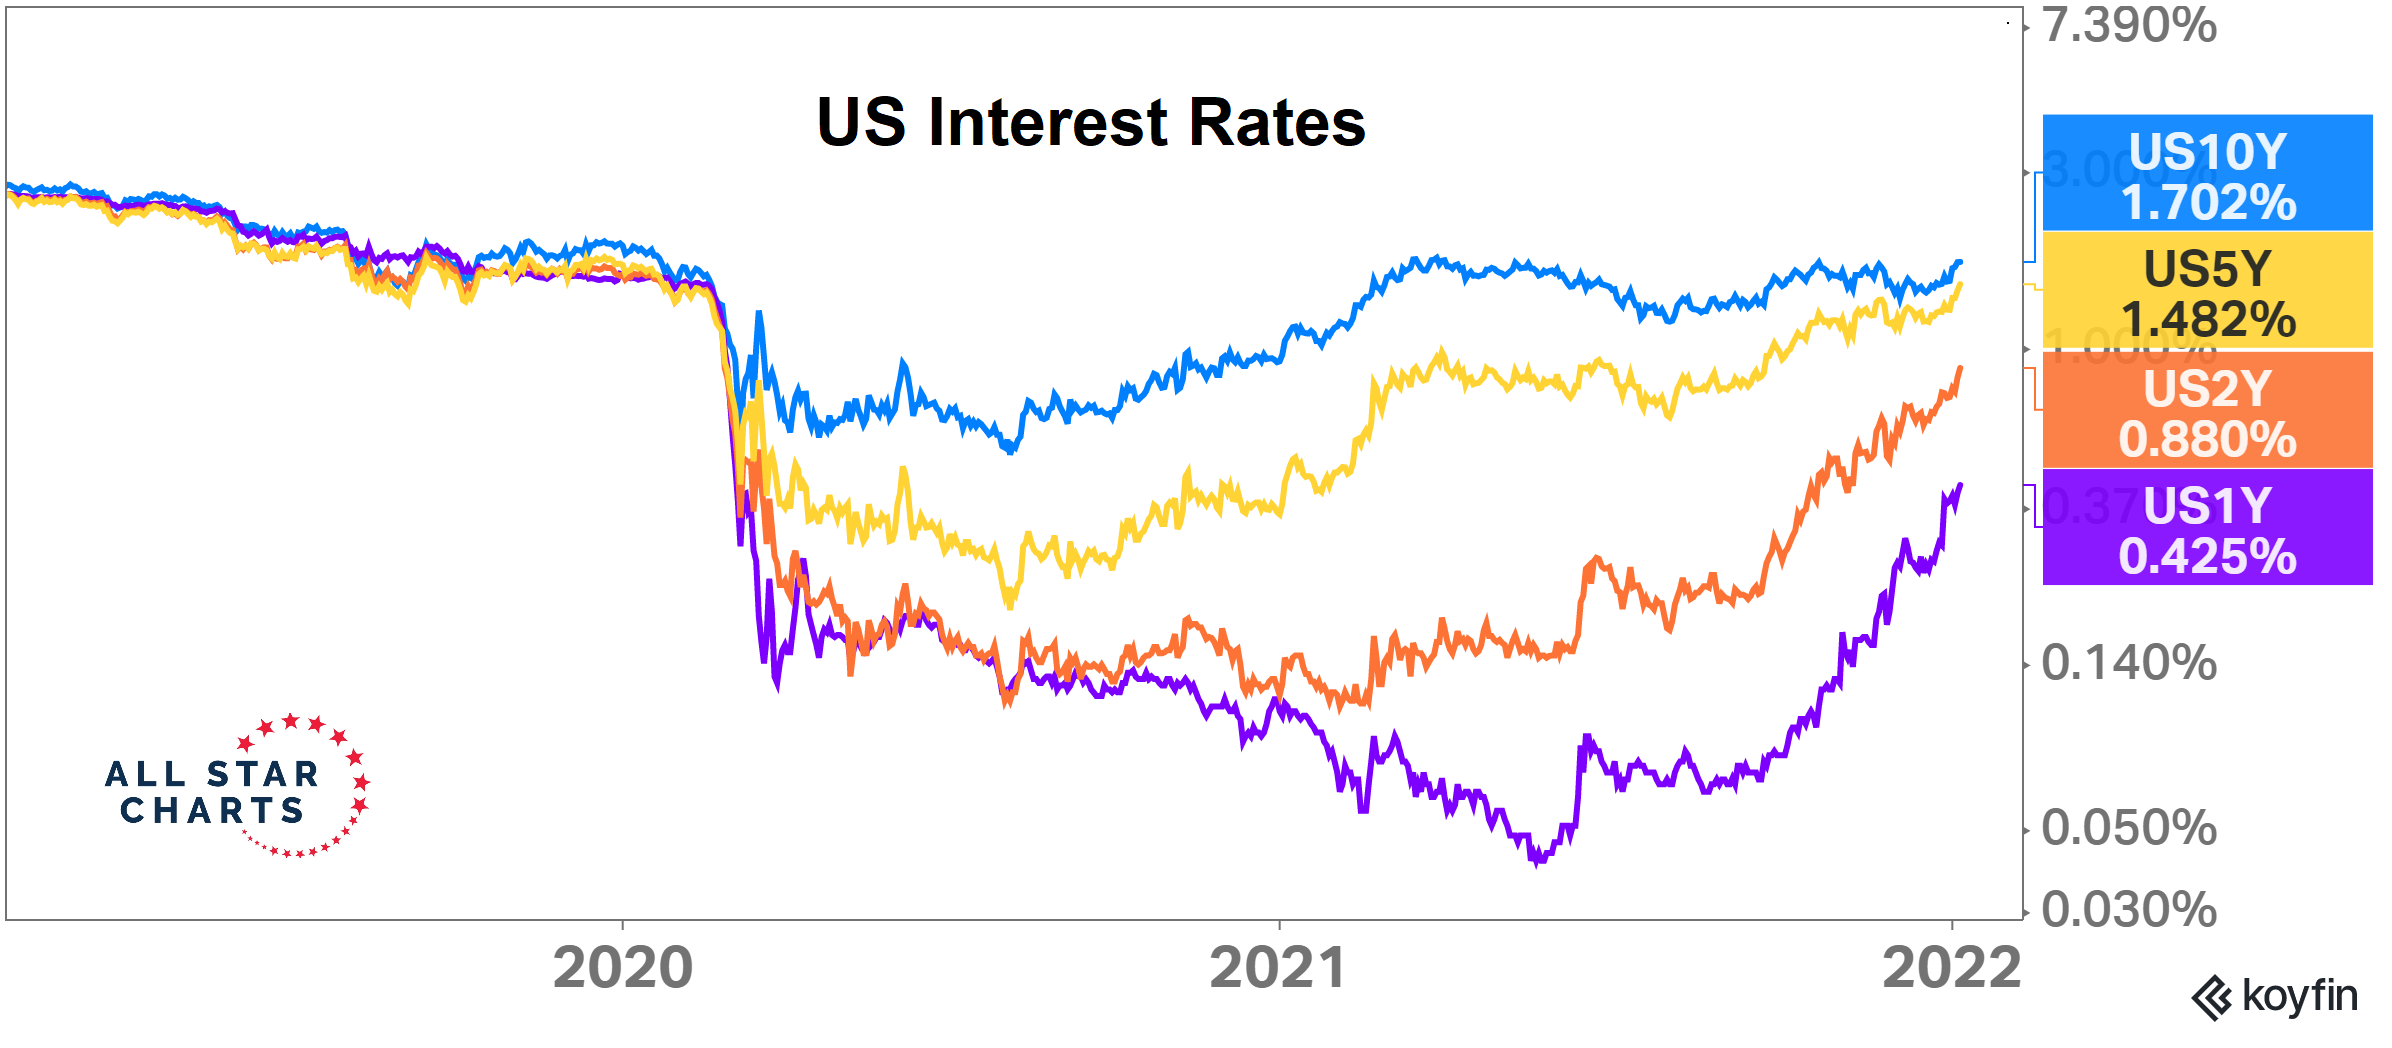 Výnosy amerických dluhopisů rostou